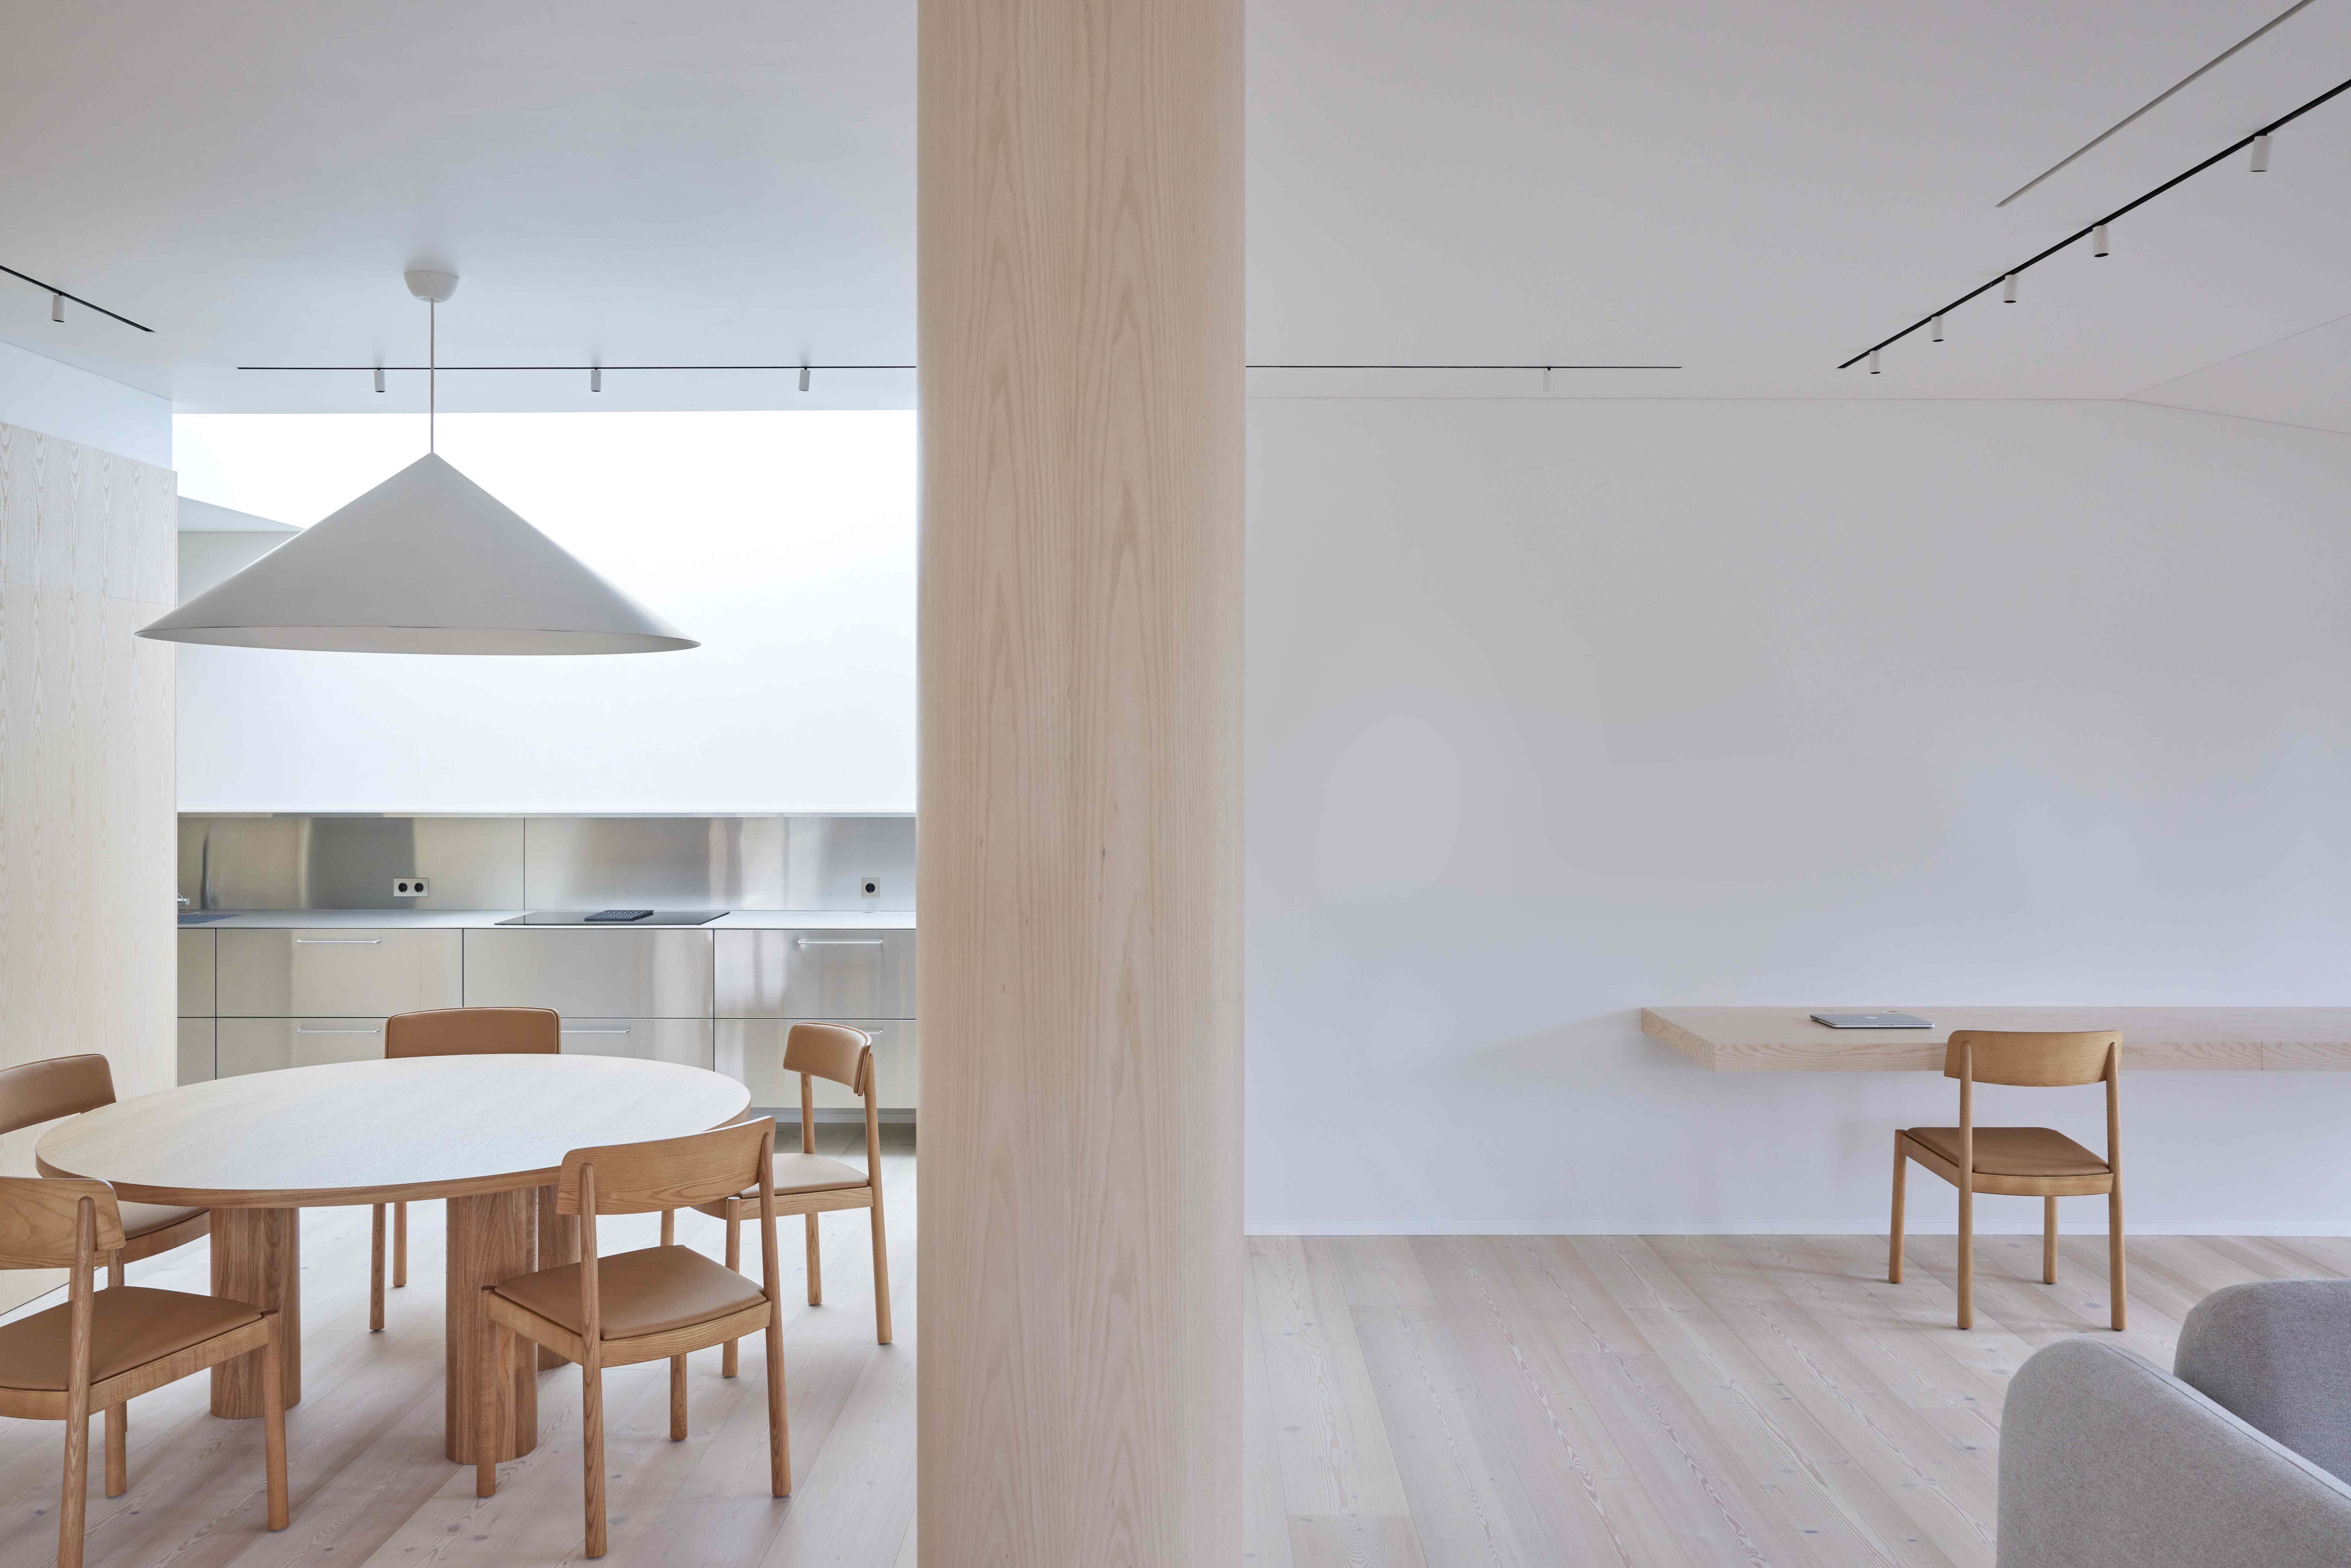 Otevřený prostor s přírodními materiály a moderním nábytkem